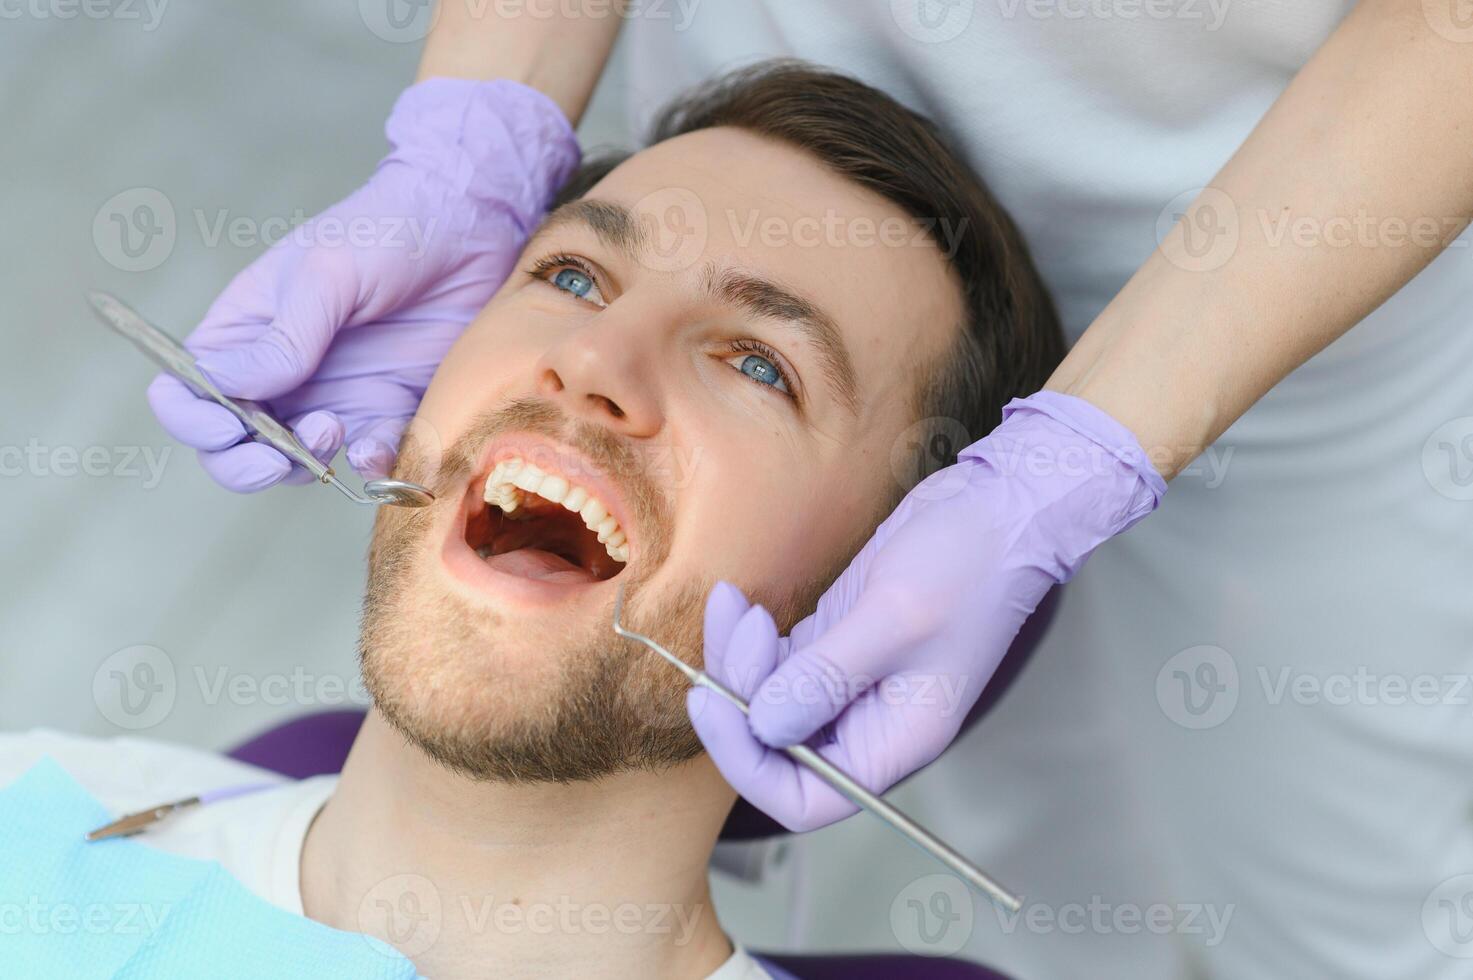 periodontal Serviços. fechar-se tiro do sorridente homem obtendo tratamento dentro estomatológico clínica, dentista médico dentro luvas usando estéril dental Ferramentas para examinando dentes do masculino paciente foto